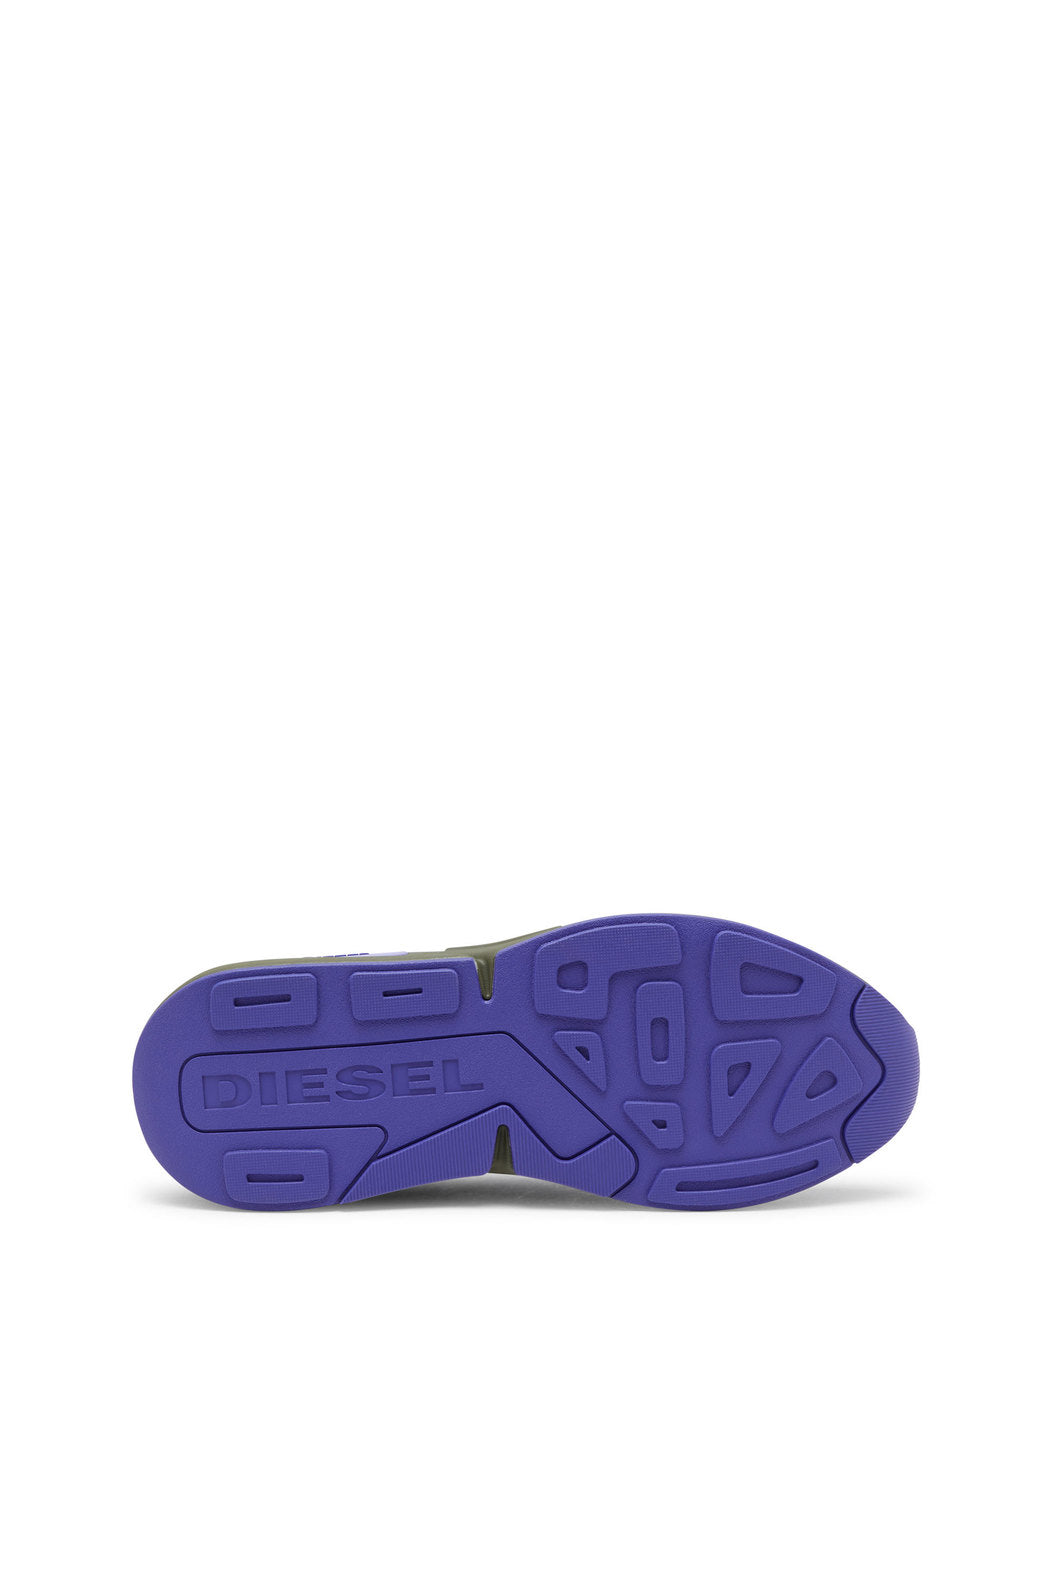 Diesel Y02868P5179 Mens Serendipity Sport Sneakers Green/Purple